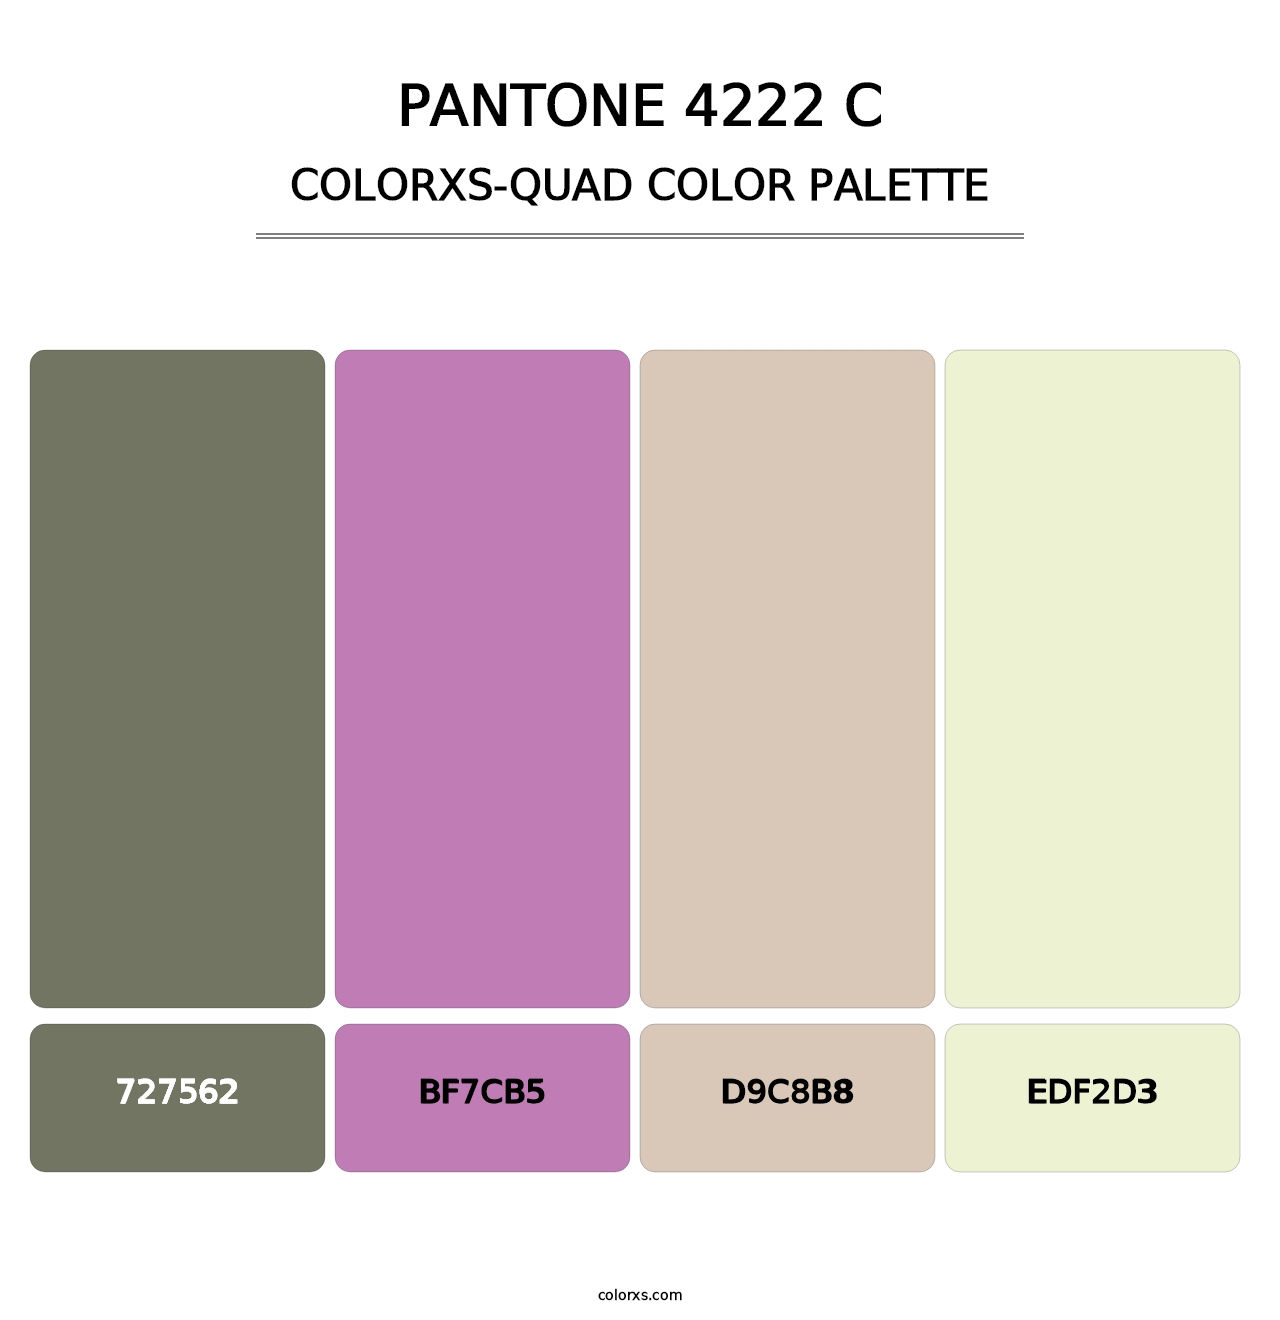 PANTONE 4222 C - Colorxs Quad Palette